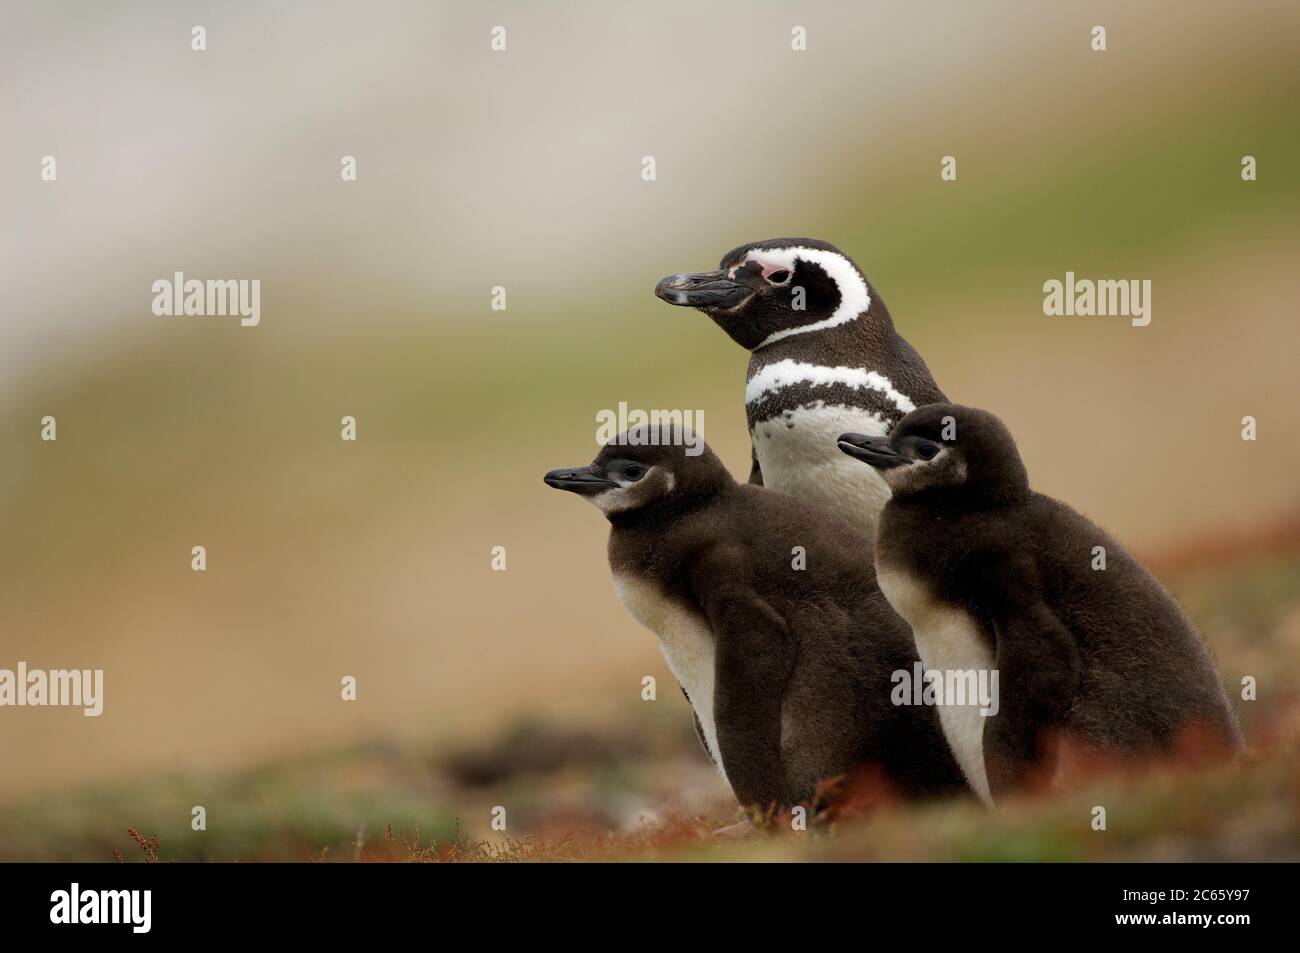 Kleinere Küken des Magellanic Pinguins (Spheniscus magellanicus) werden häufig gefüttert, aber diese mehr als zwei Wochen alten Küken müssen zwei bis drei Tage auf ihre nächste Mahlzeit warten - da der Erwachsene auf den "Wachwechsel" warten muss. Stockfoto